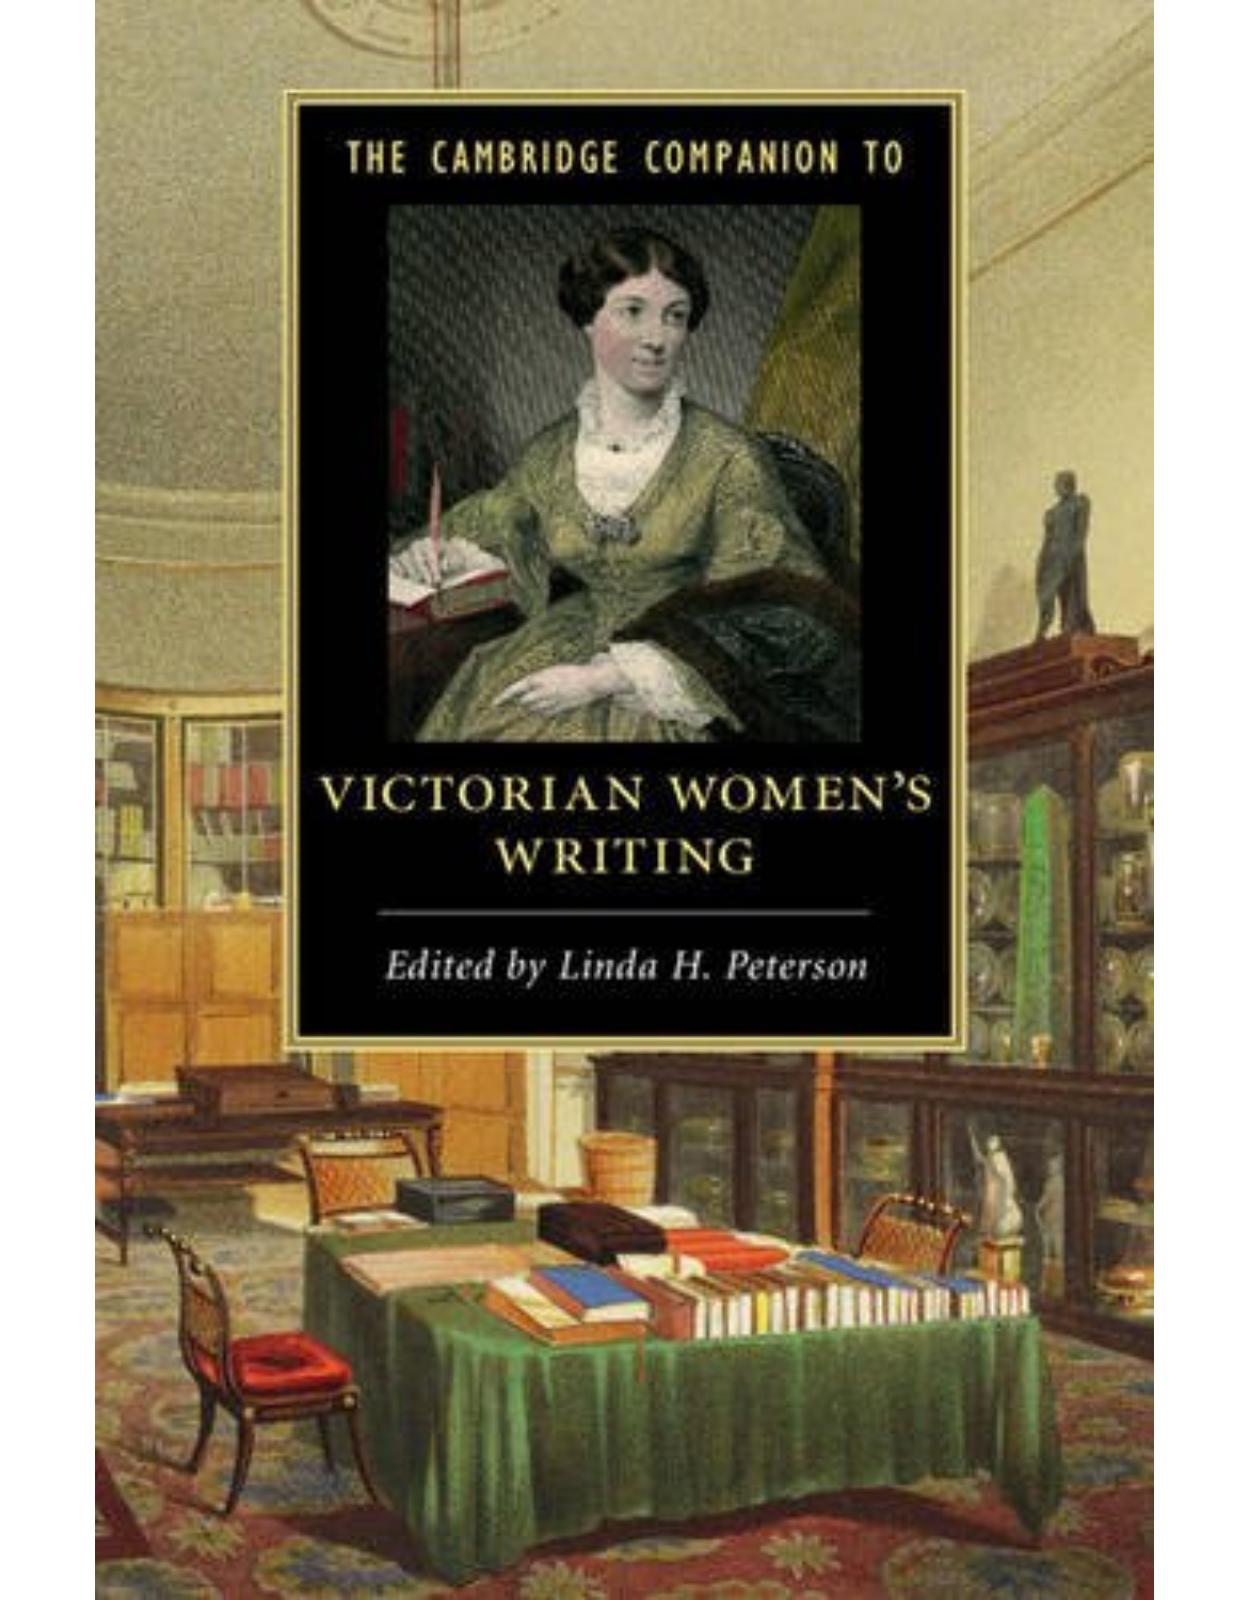 The Cambridge Companion to Victorian Women's Writing (Cambridge Companions to Literature)